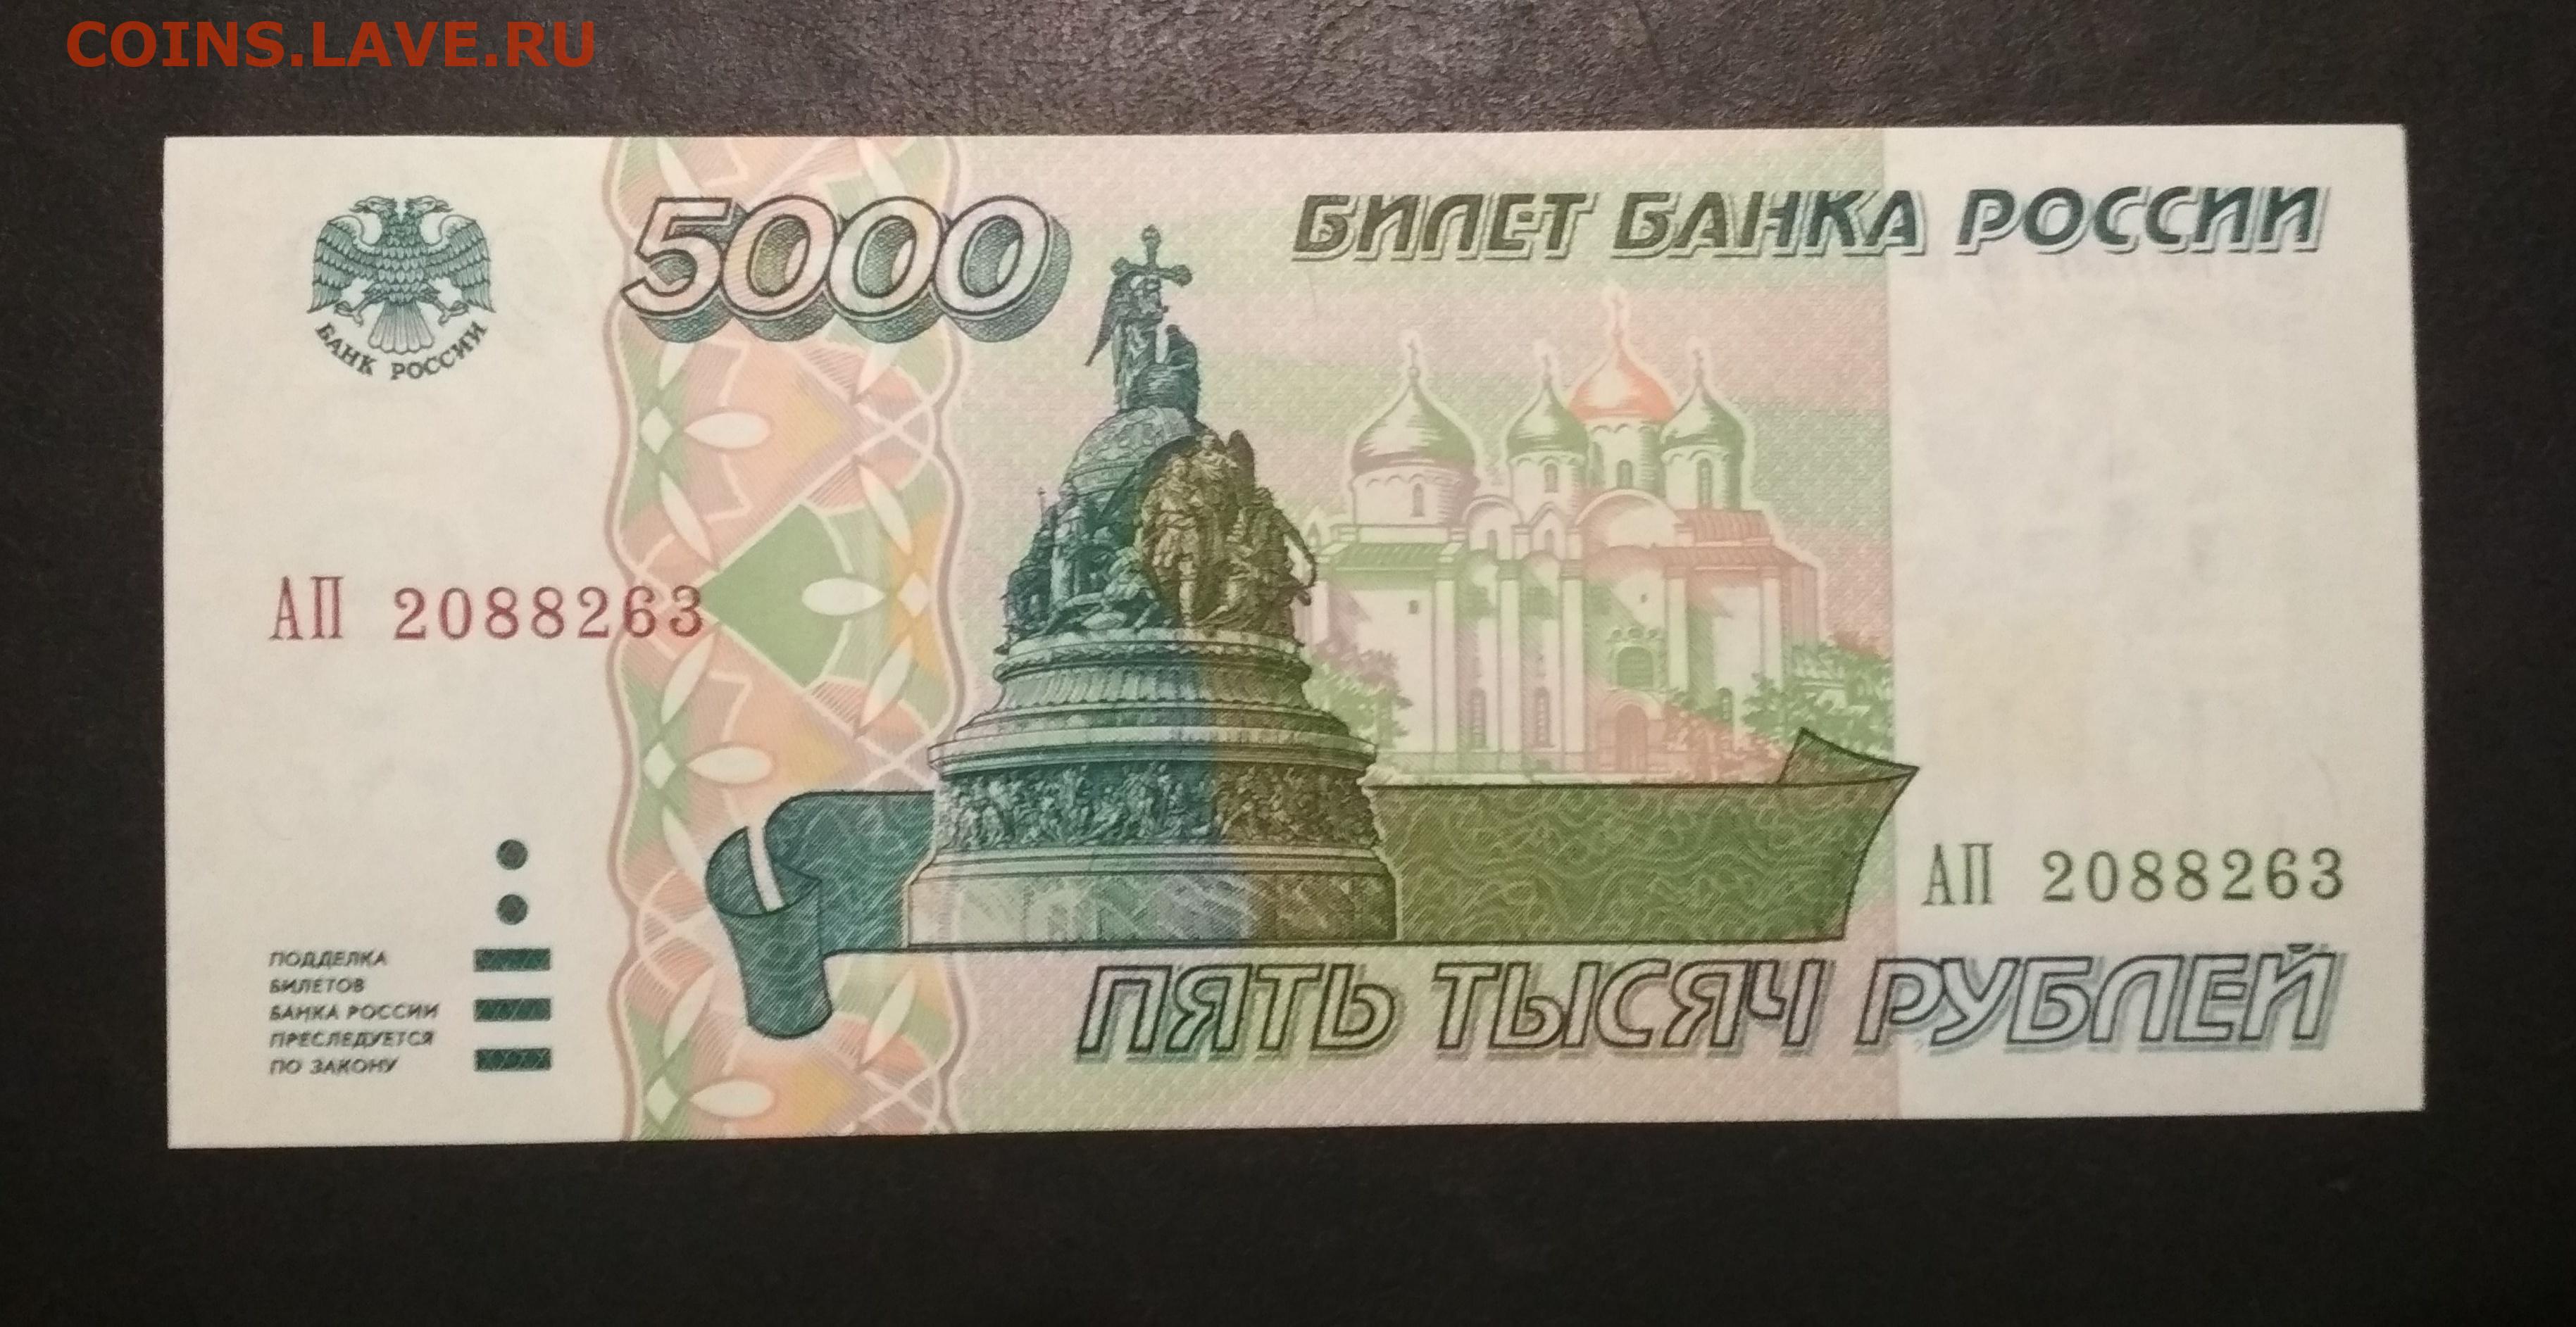 5 рублей бумажные в обороте. 5000 Рублей 1995 года. 5000 Рублей образца 1995 года. Купюра 5 рублей. Банкнота 5 рублей.